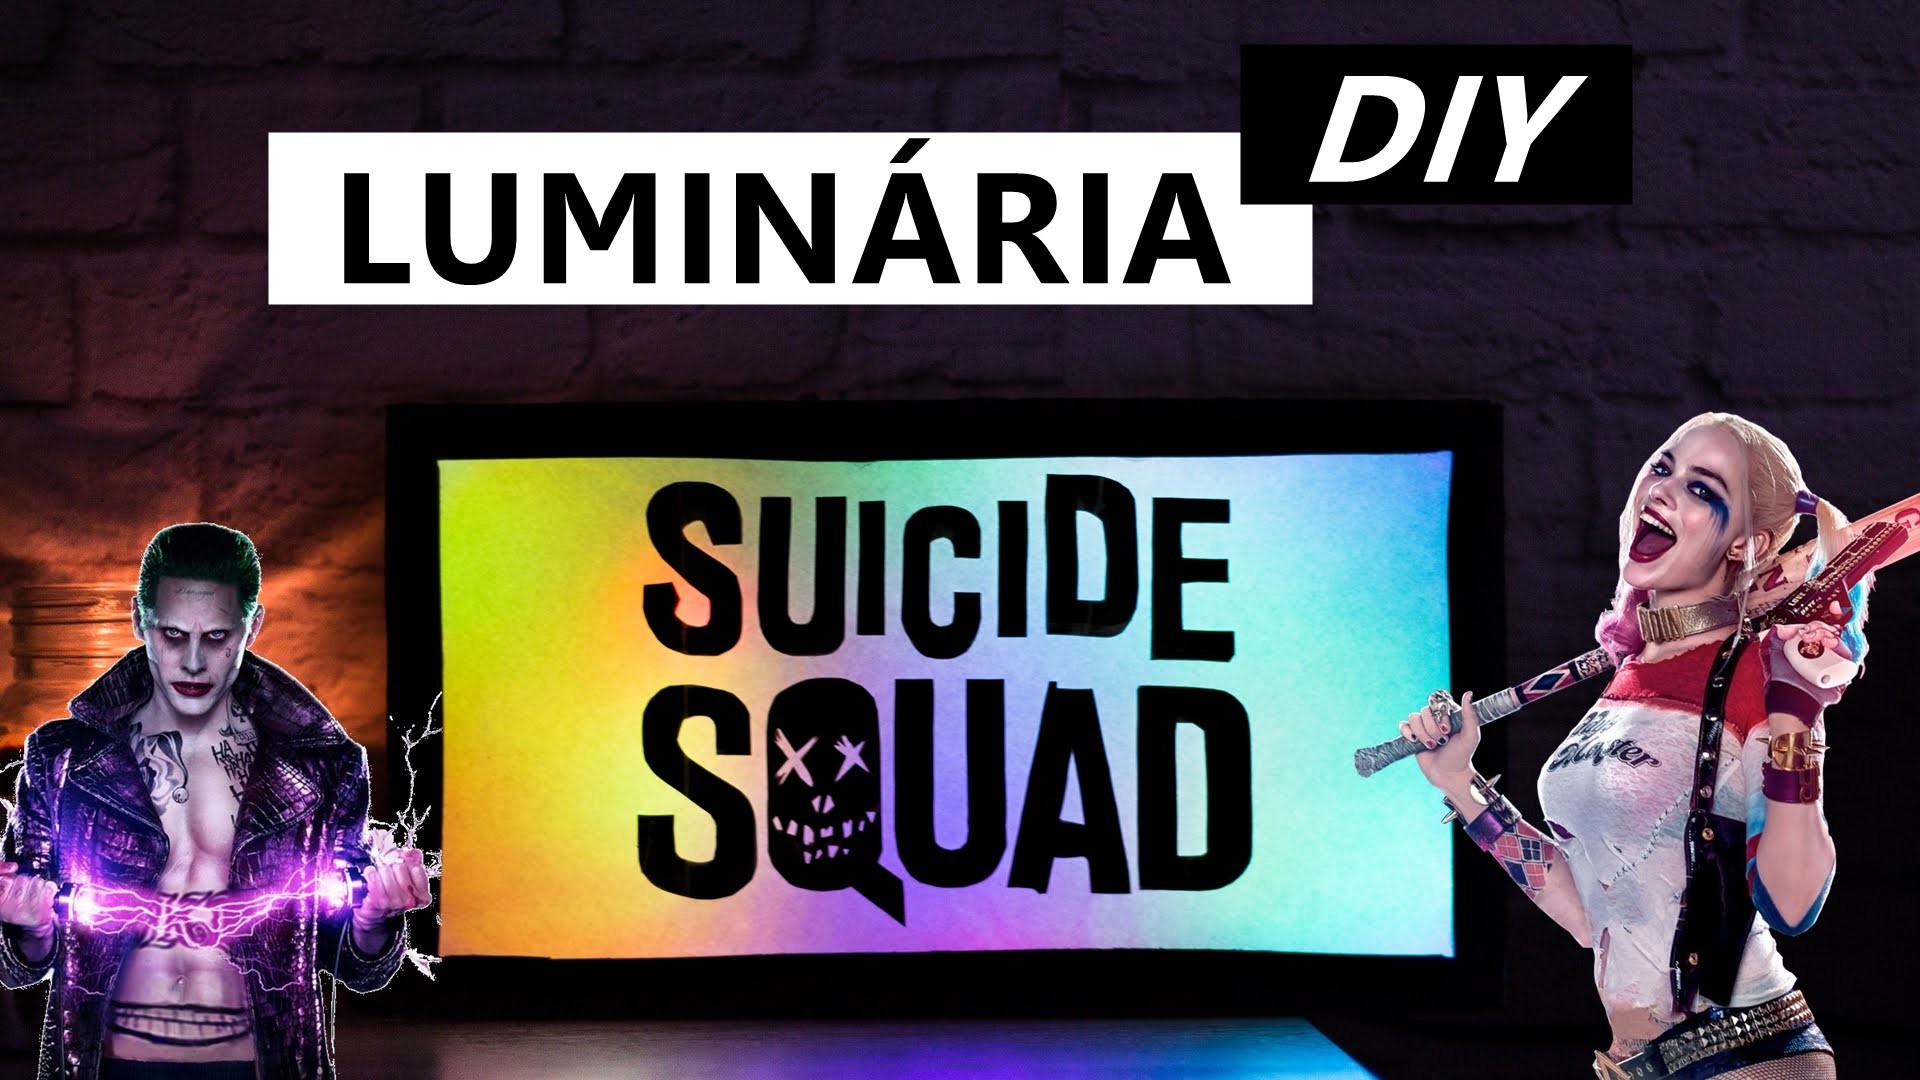 DIY Esquadrão Suicida Luminária Suicide Squad - Decoração Geek - Como fazer